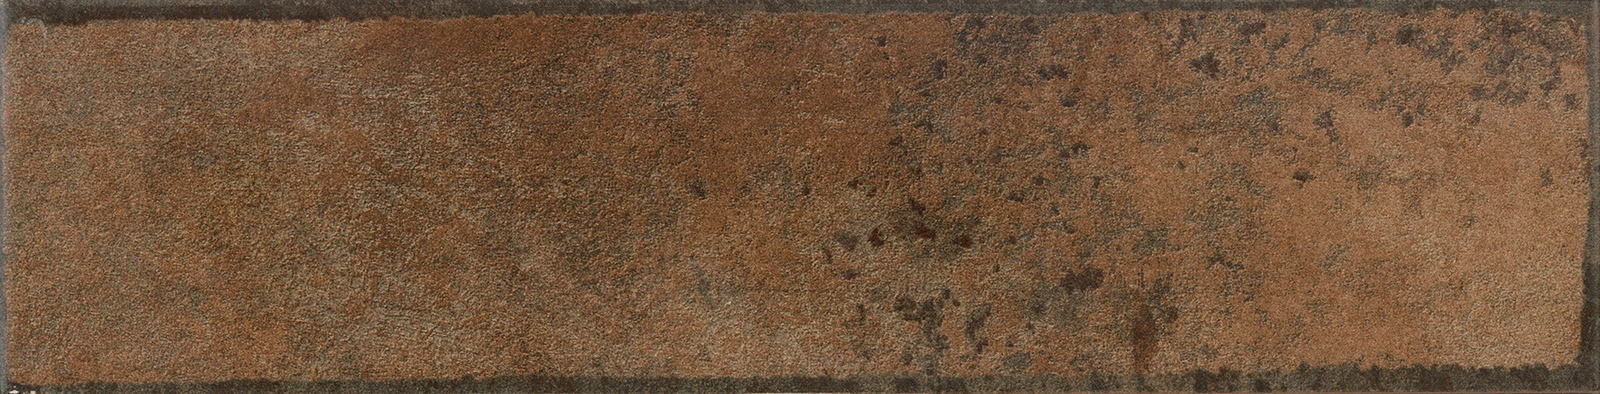 Obklad matný ALOY Copper 7,5x30